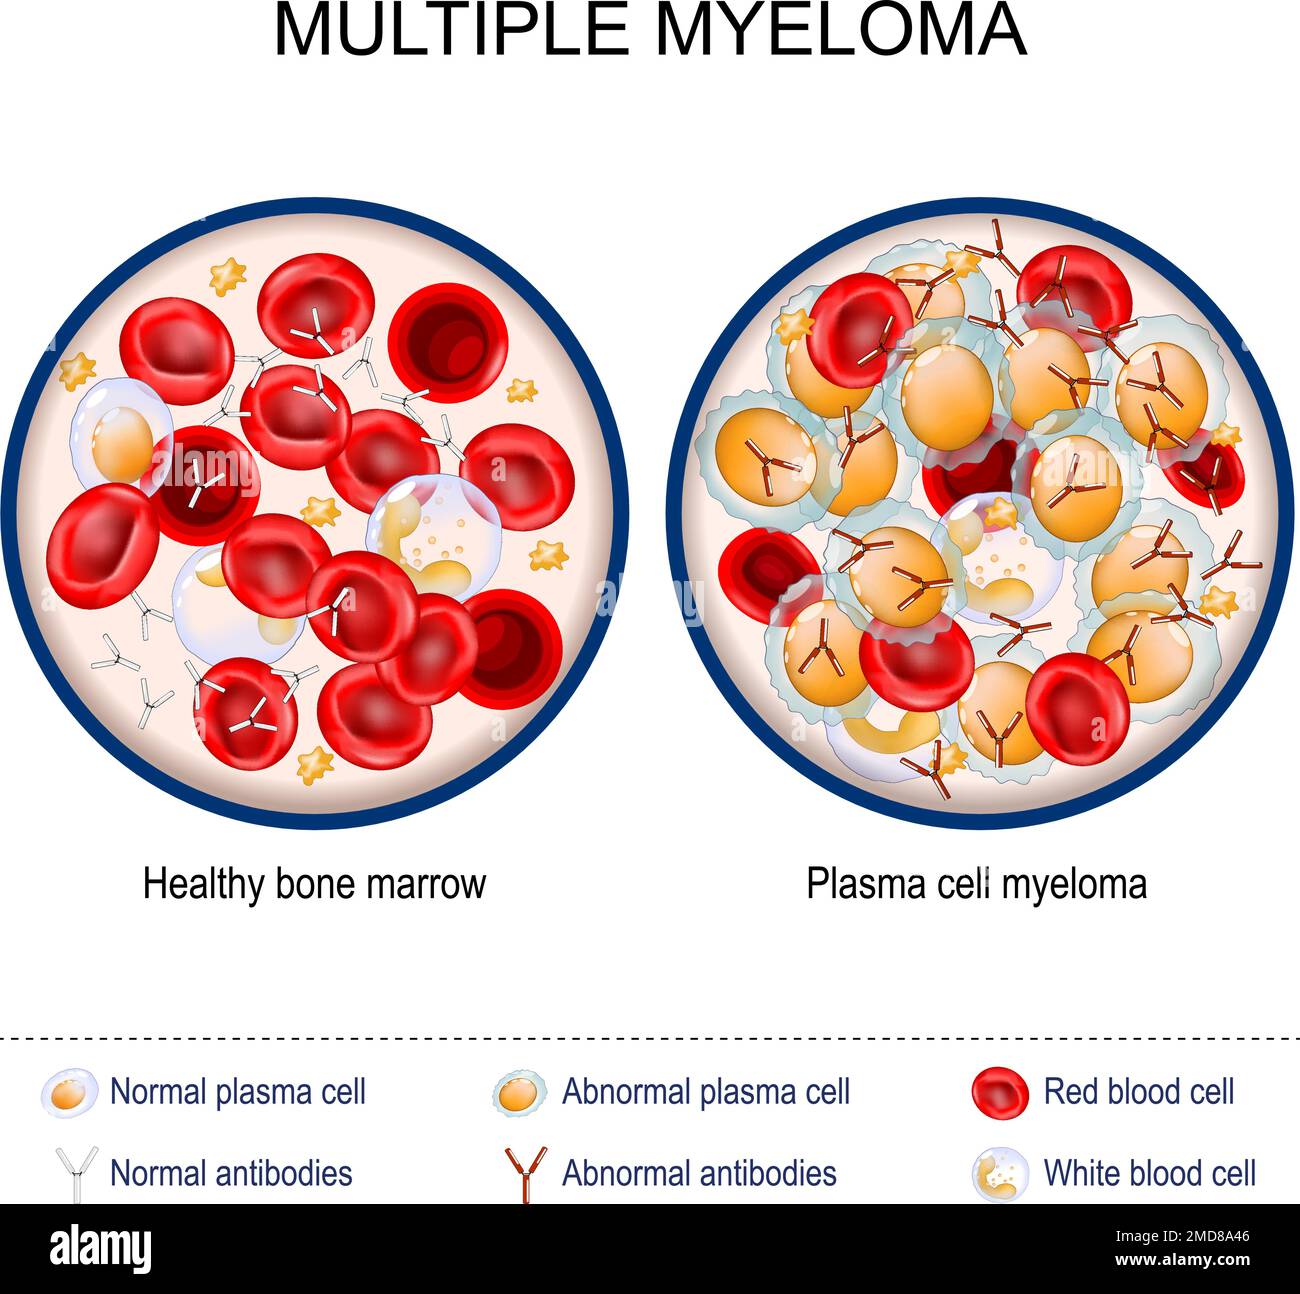 Multiples Myelom. Nahaufnahme von gesundem Knochenmark und Plasmazellmyelom. Rote und weiße Blutkörperchen, normale und abnormale Antikörper. Plasmakarzinom Stock Vektor